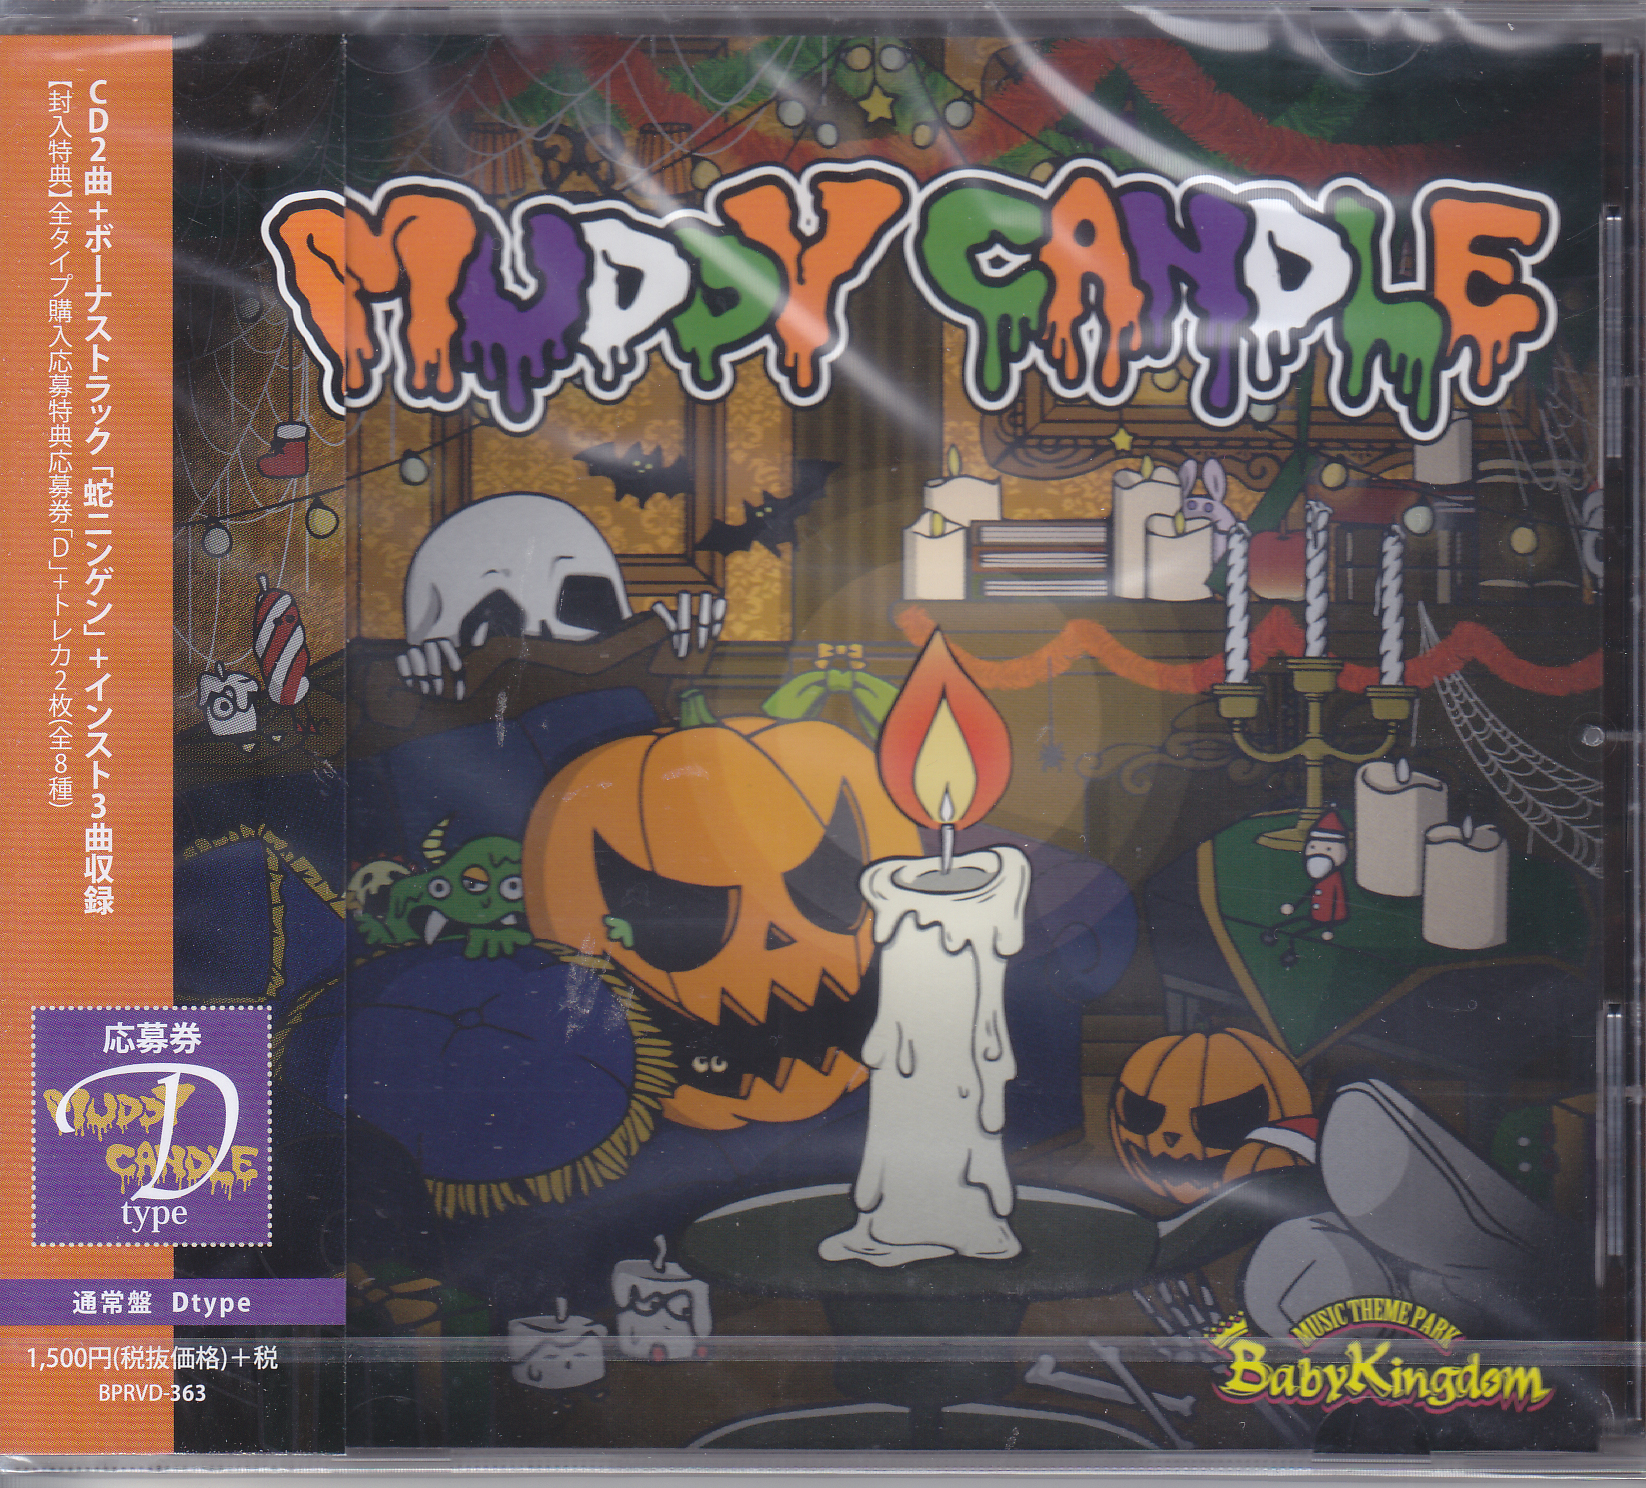 ベイビーキングダム の CD 【Dtype】MUDDY CANDLE